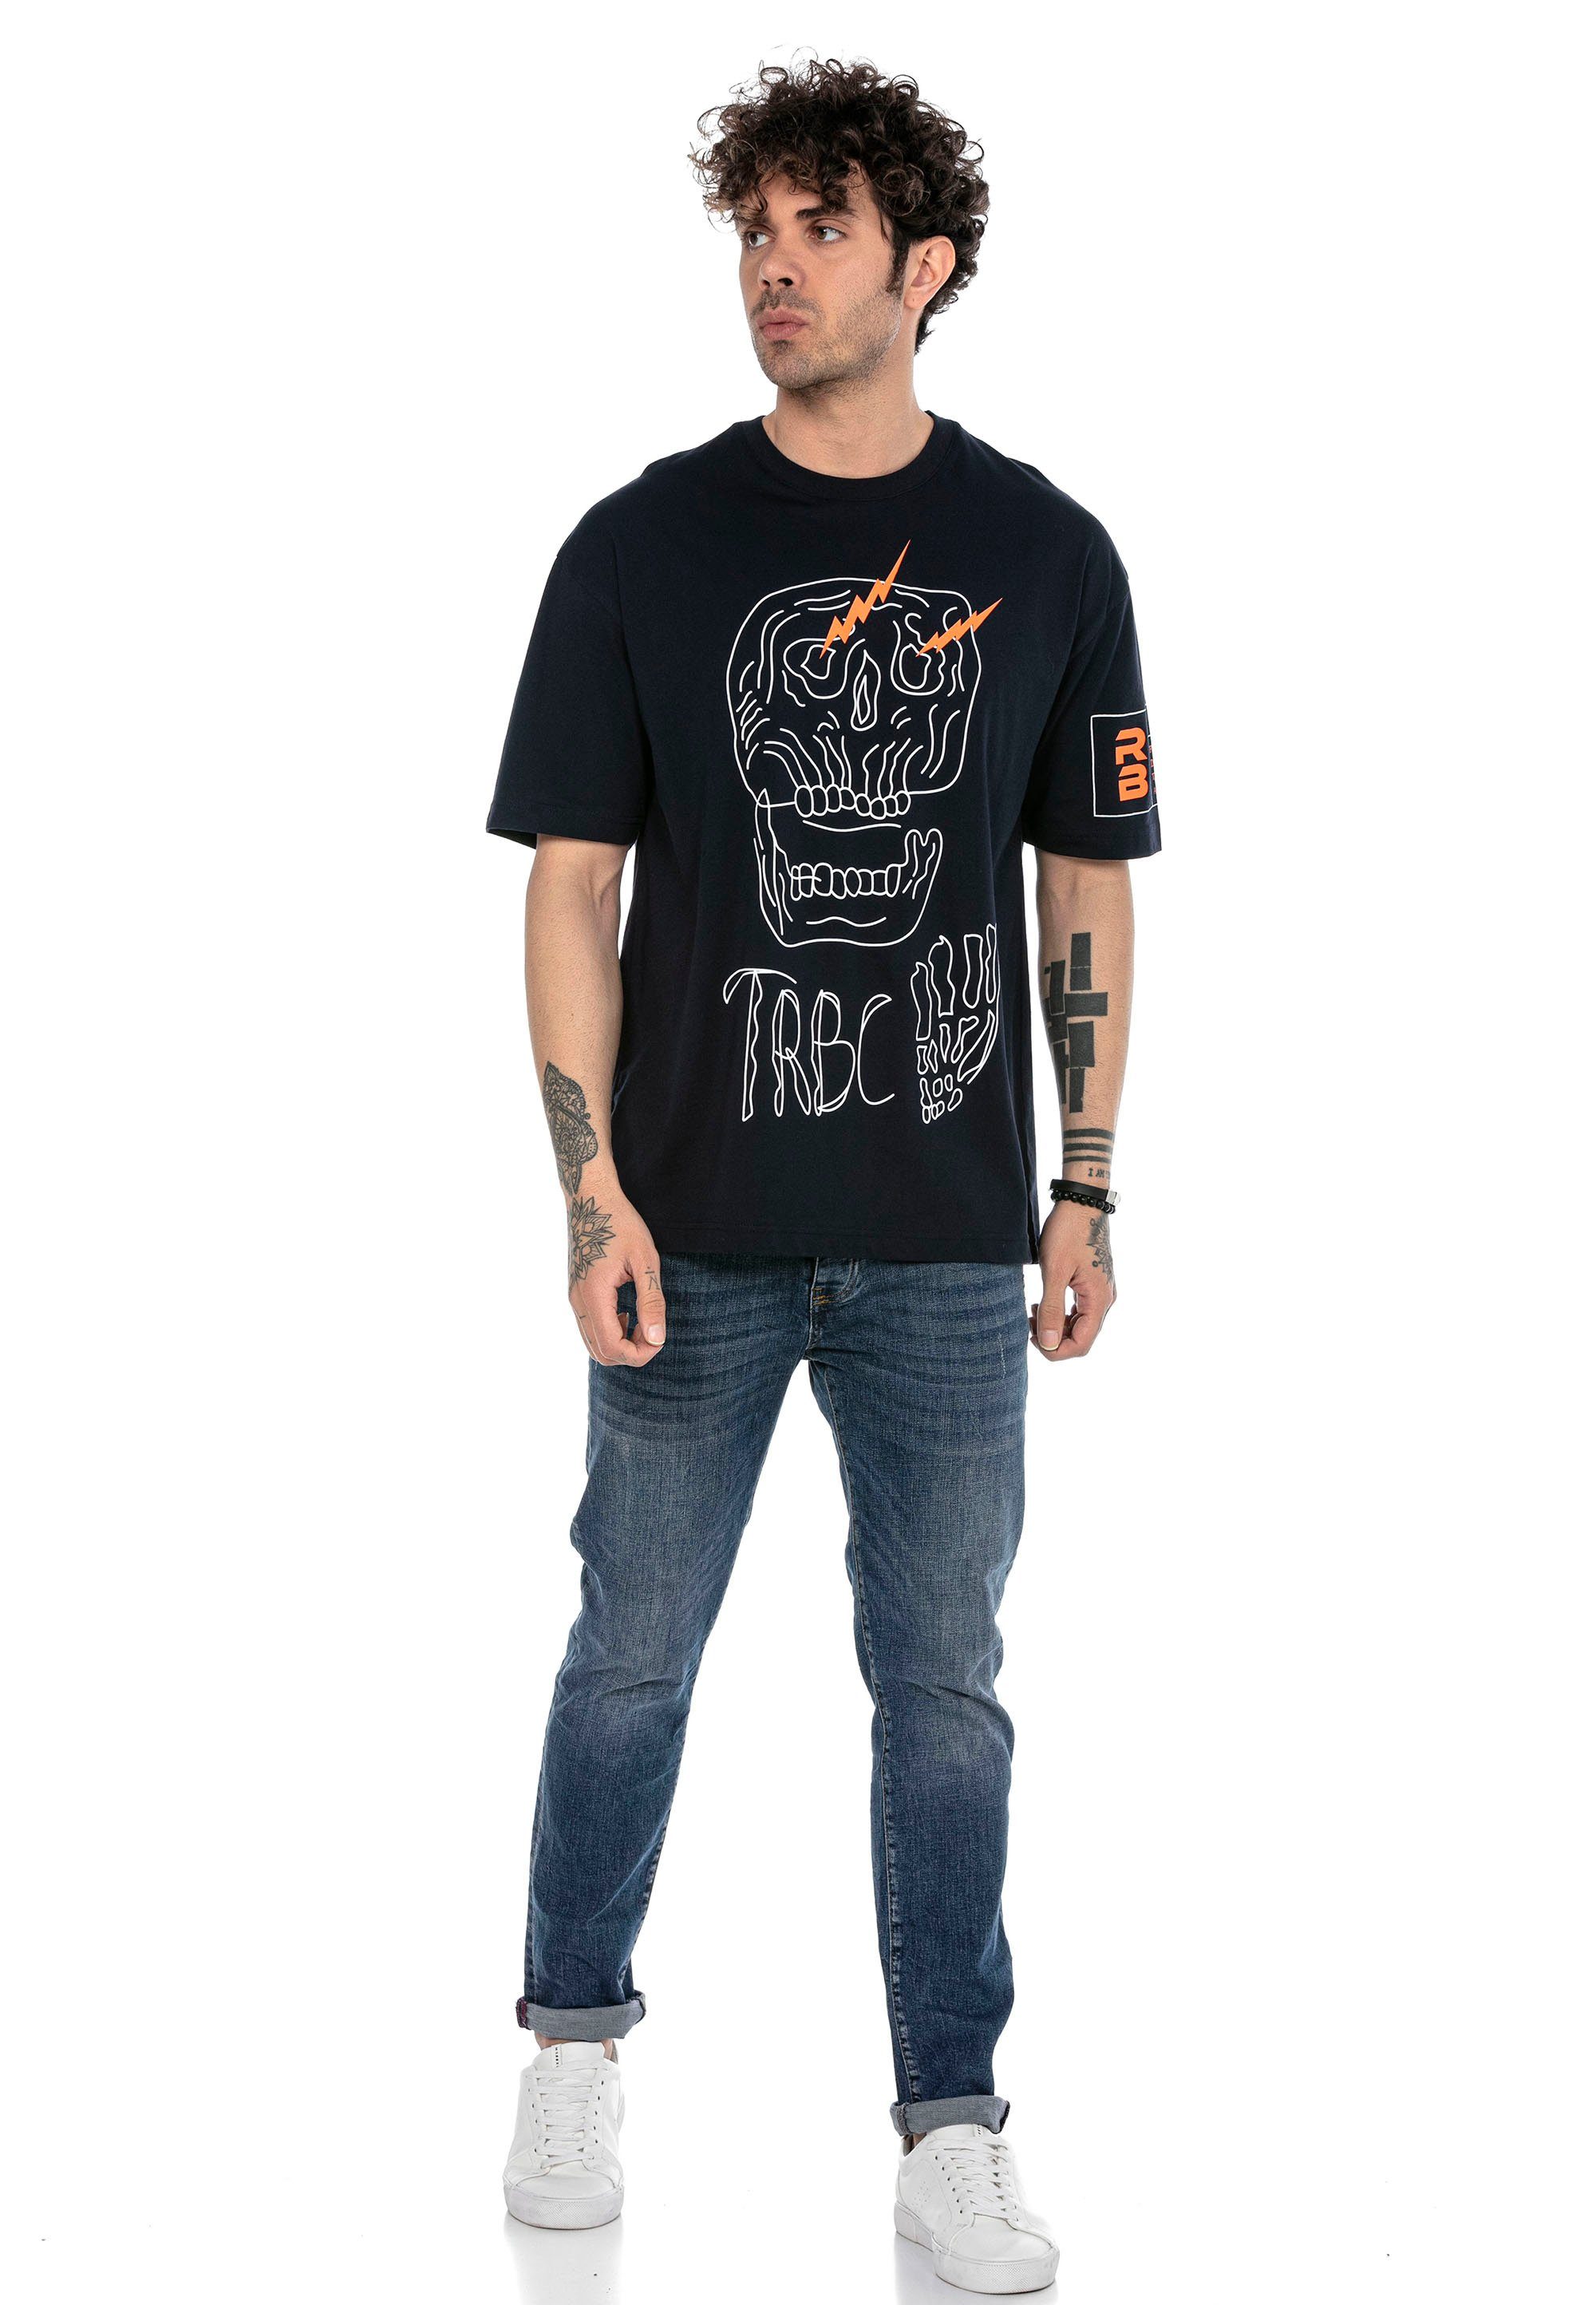 stylischem T-Shirt mit RedBridge dunkelblau Totenkopf-Print McAllen